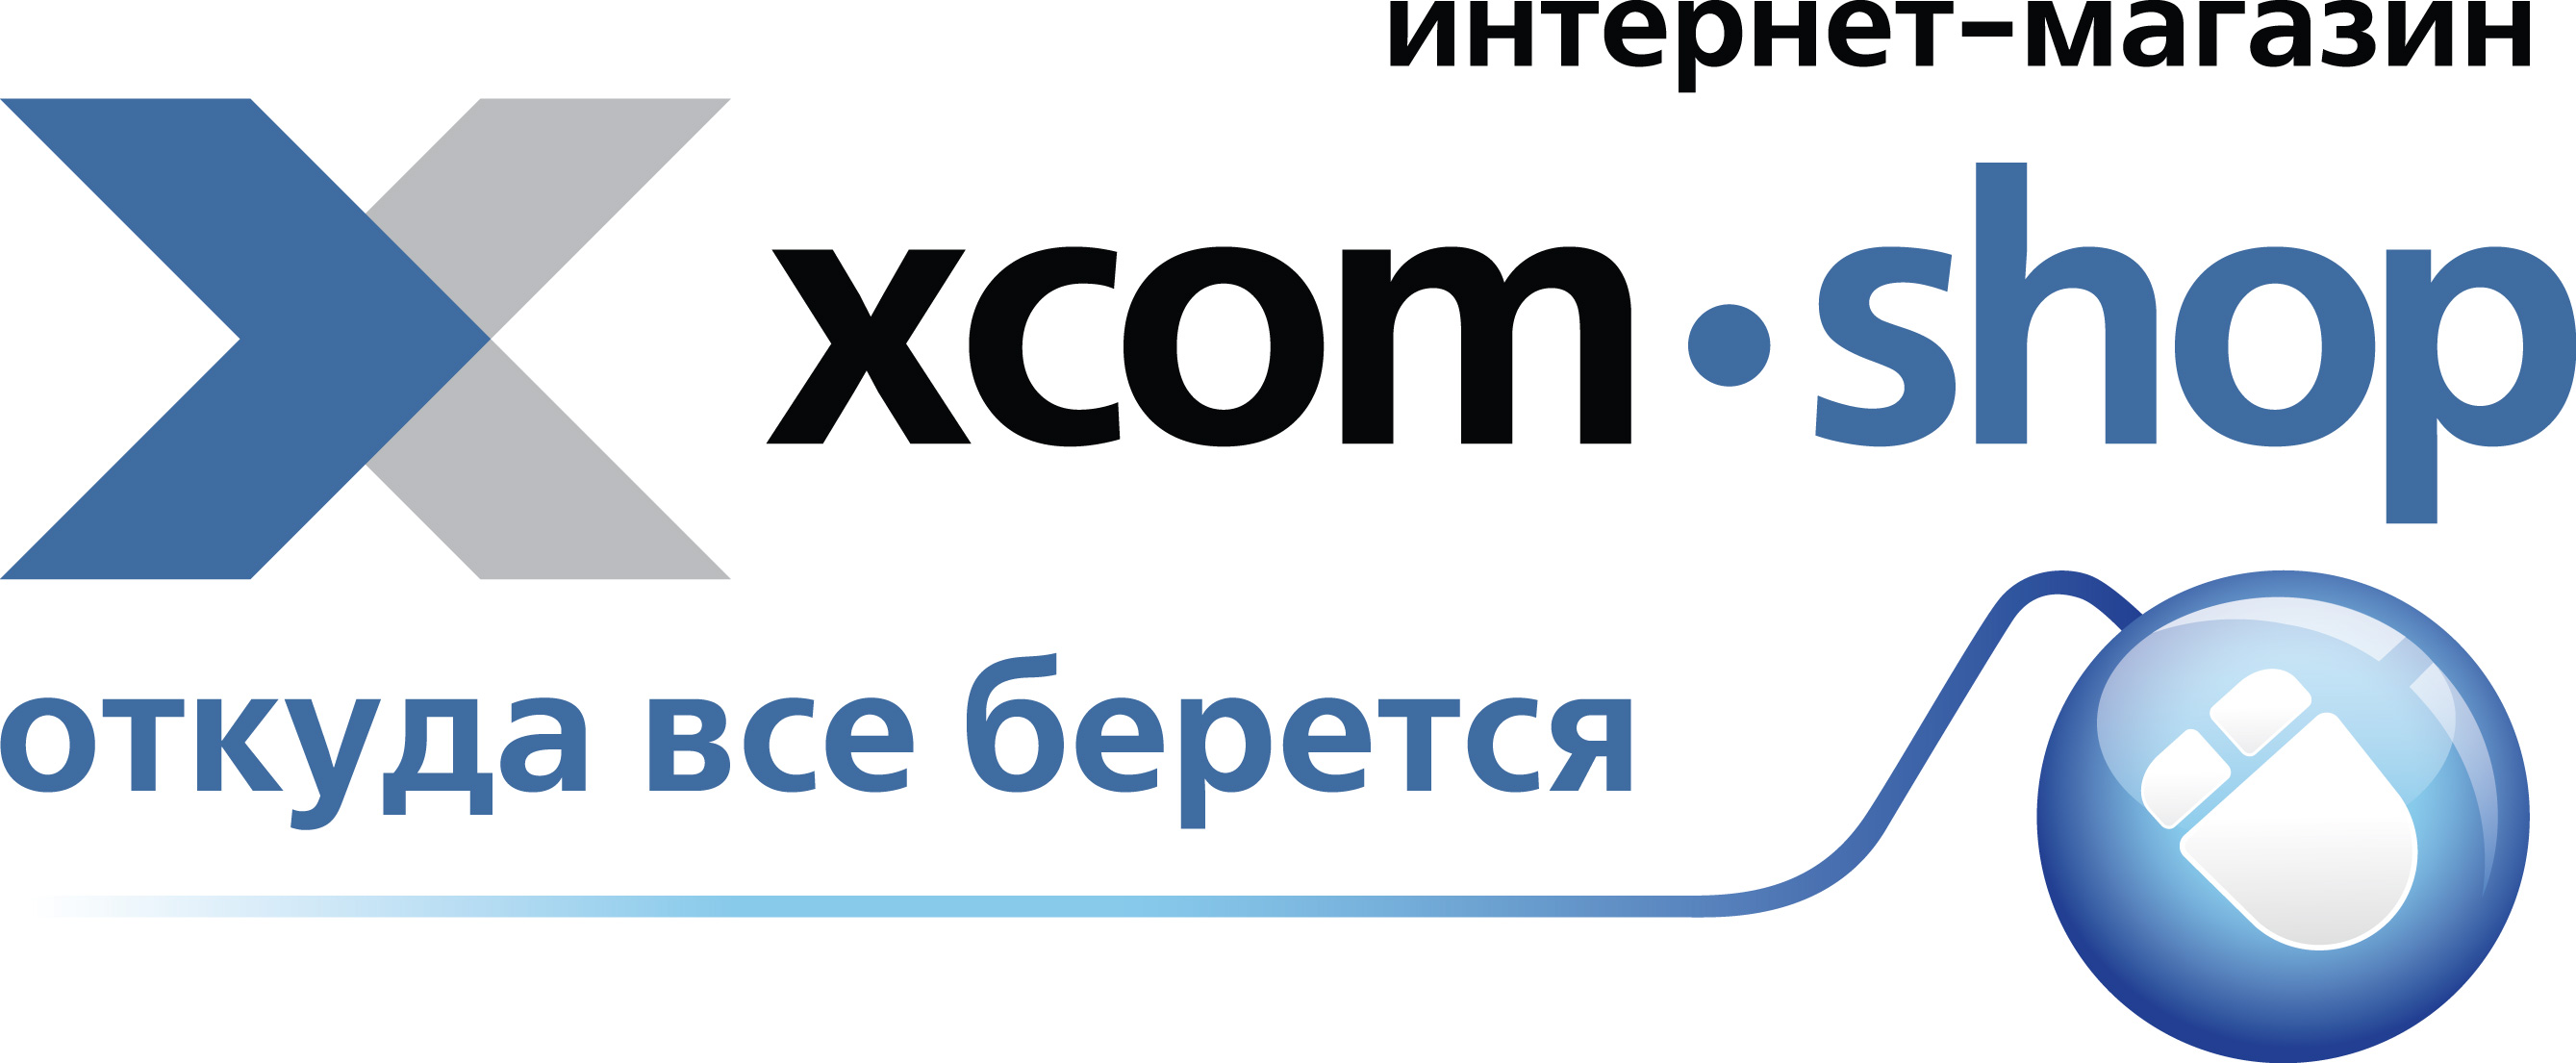 Xcom shop интернет